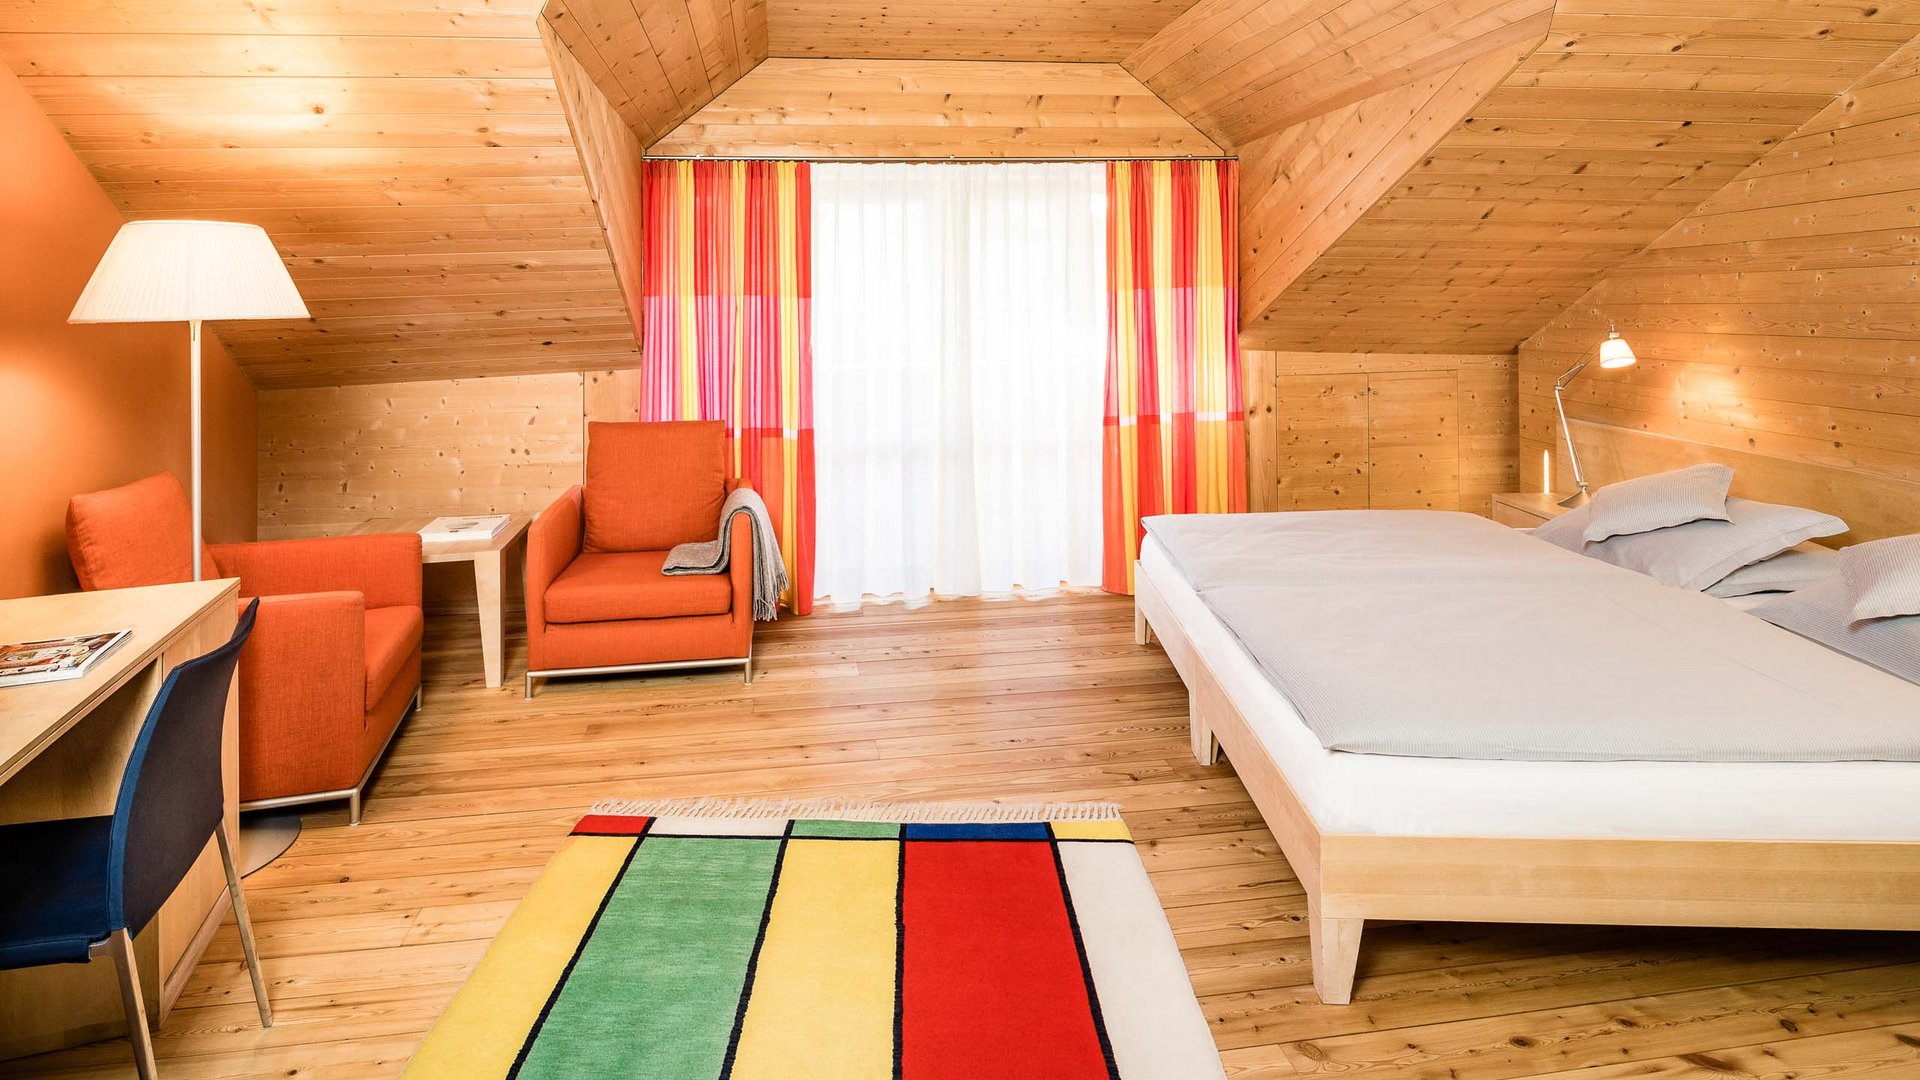 Zimmer und Suiten in der Natur | Hotels in Südtirol